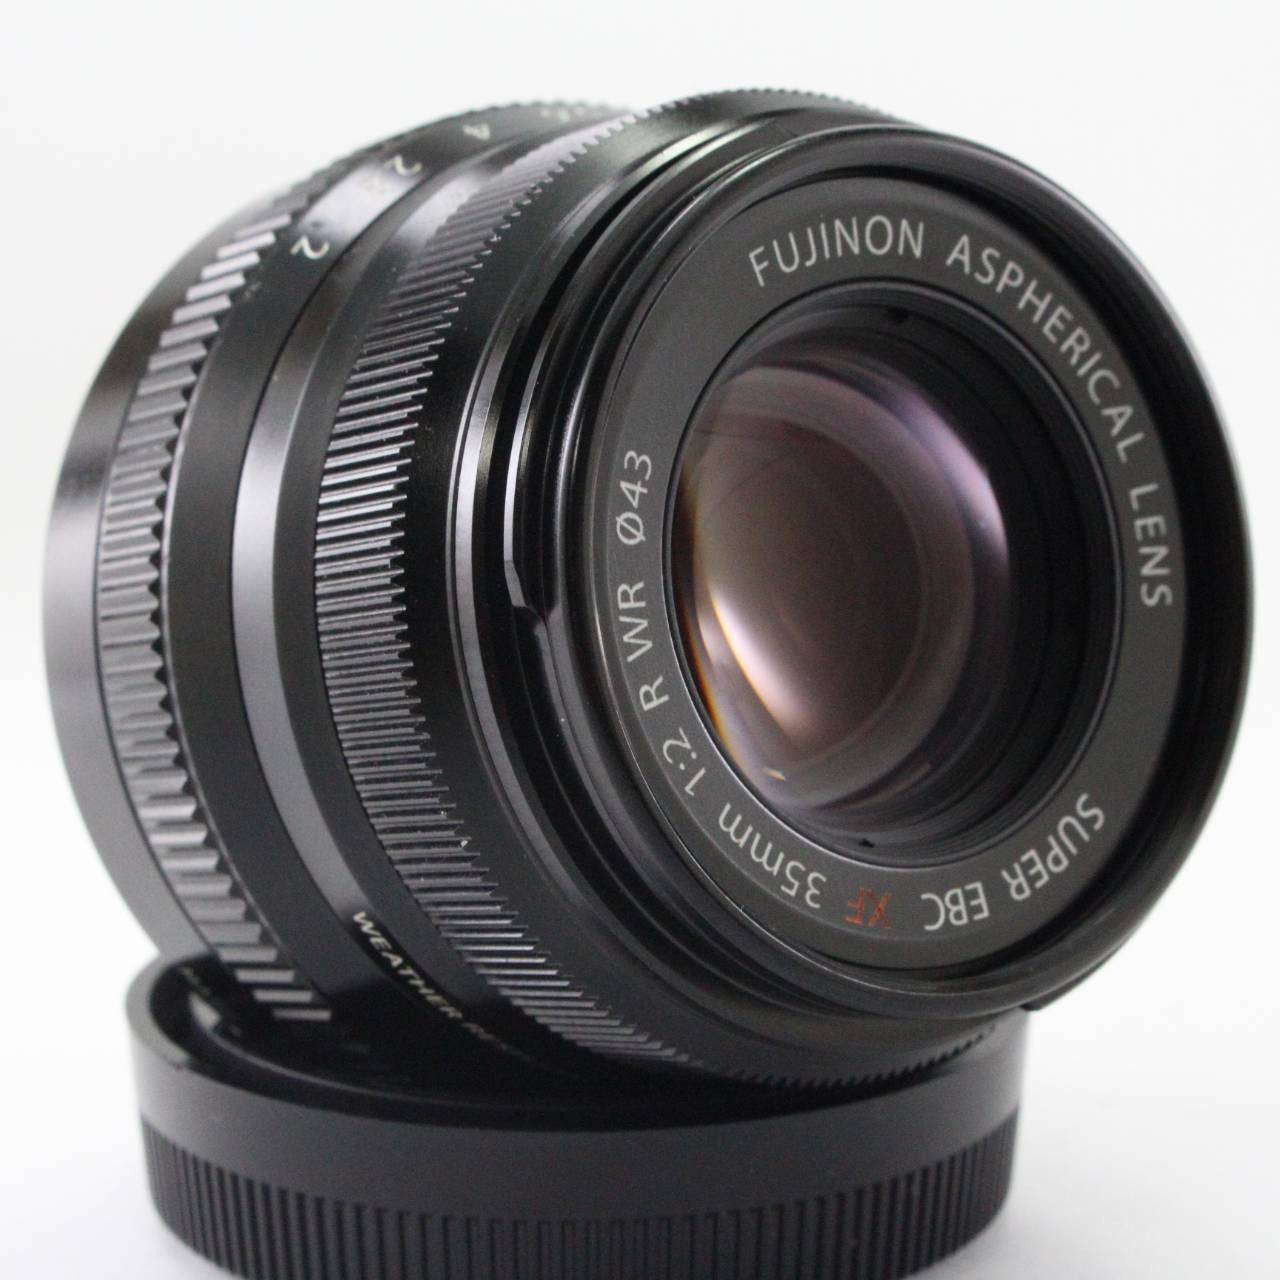 2002年春 FUJIFILM Fujifilm 一眼レフカメラ用レンズ Fujinon XF35mmF2